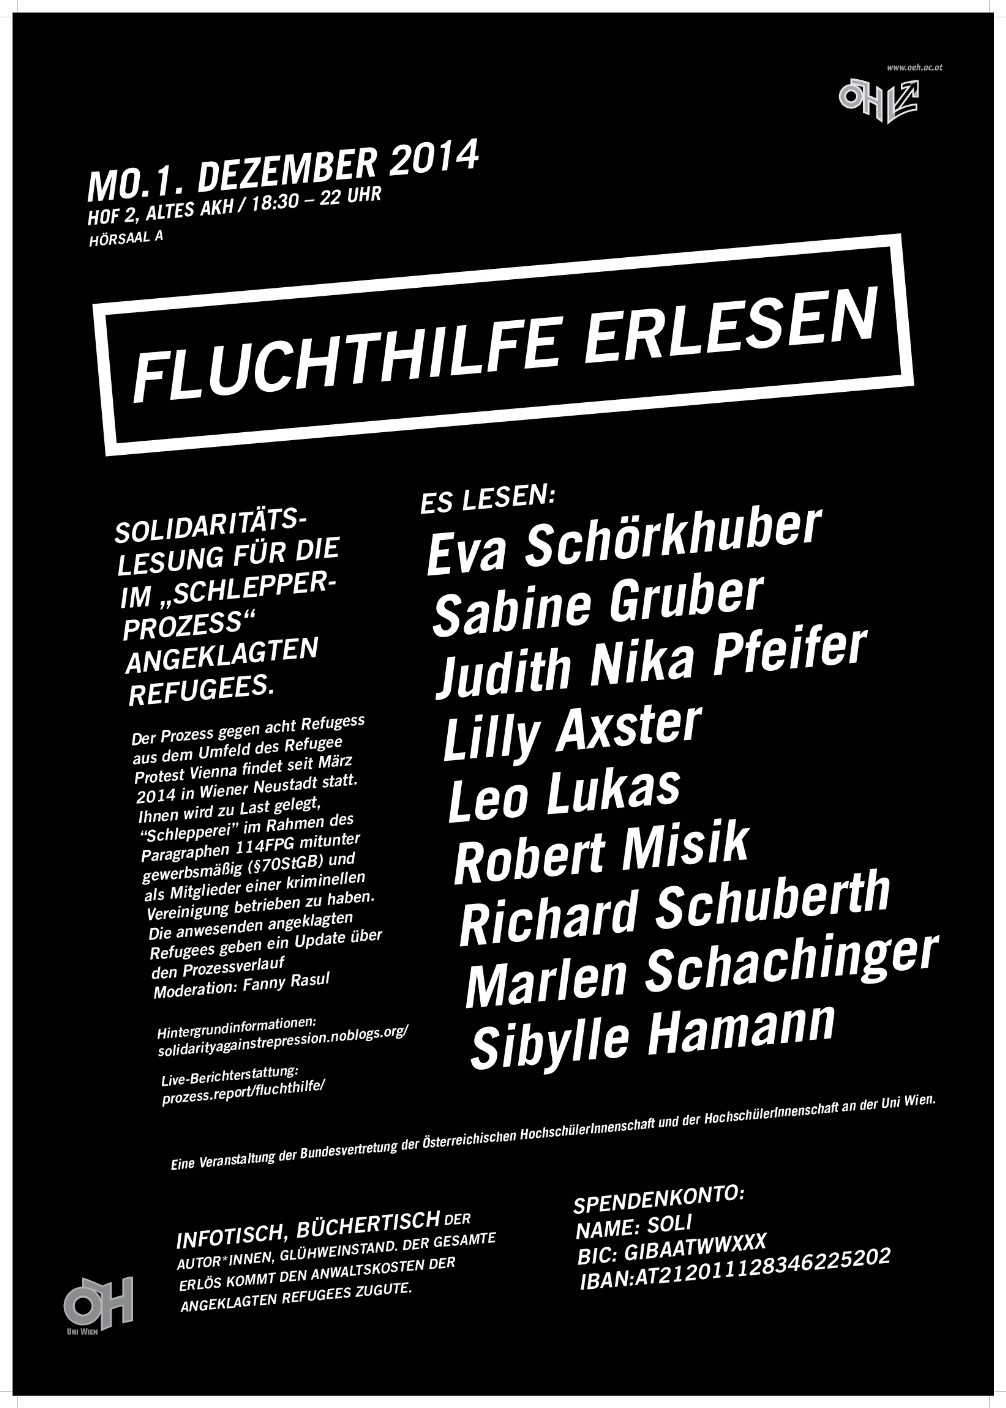 Fluchthilfe in Wien am 01.12.14 Veranstaltung, Ab 18:30, mit Vea Schörkhuber uvm. 